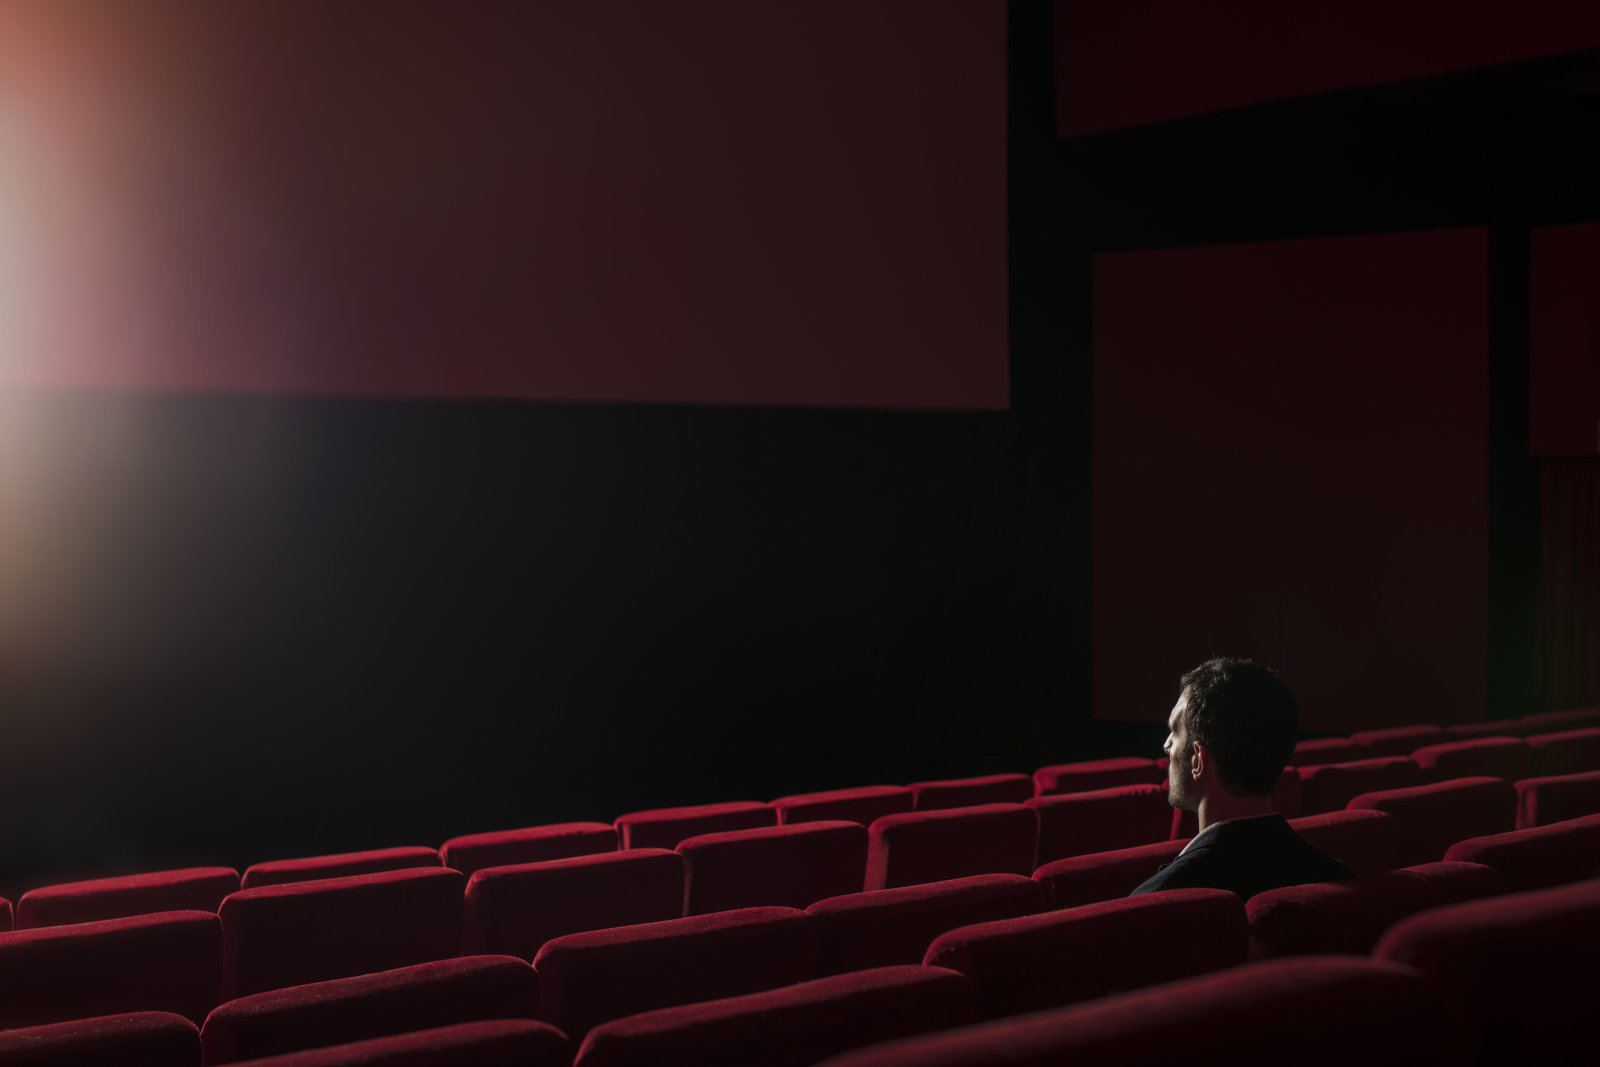 Οι Ιταλικές ταινίες θα προβάλλονται υποχρεωτικά πρώτα από τους κινηματογράφους και μετά από υπηρεσίες streaming